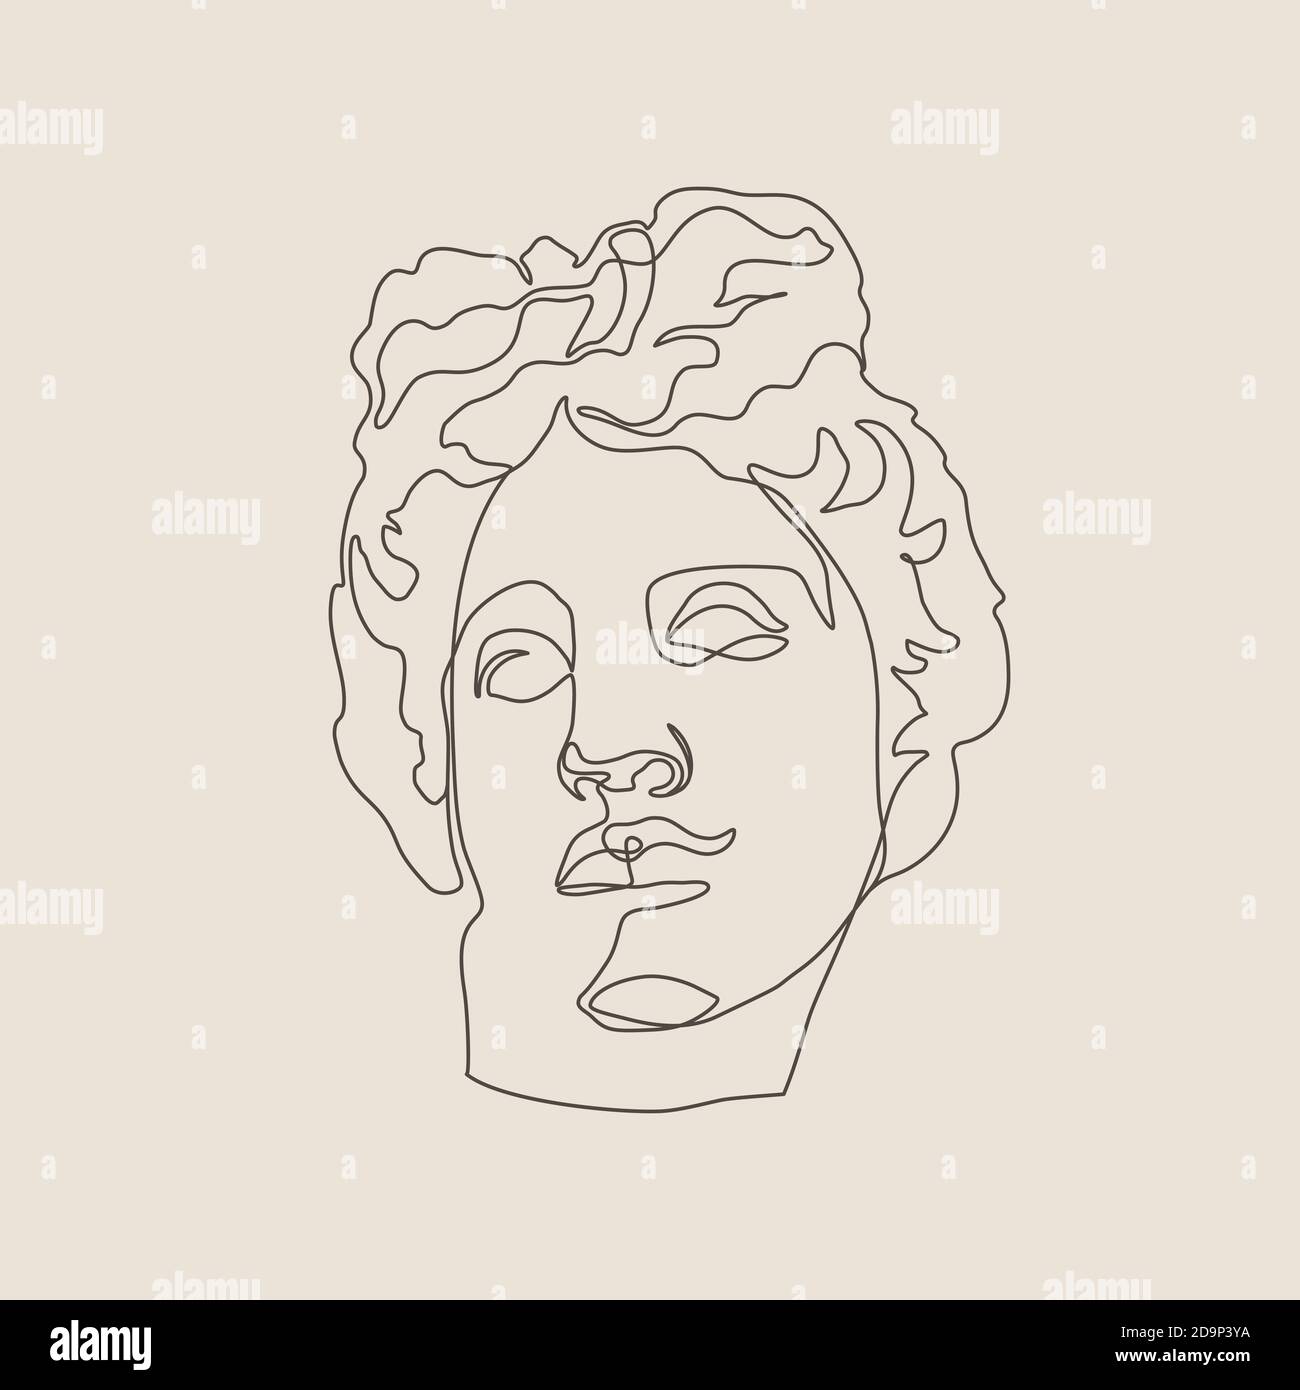 Une ligne Sculpture d'Apollo dans un style tendance minimaliste. Illustration vectorielle du Dieu grec pour des imprimés sur des t-shirts, des affiches, des cartes postales, des tatouages Illustration de Vecteur